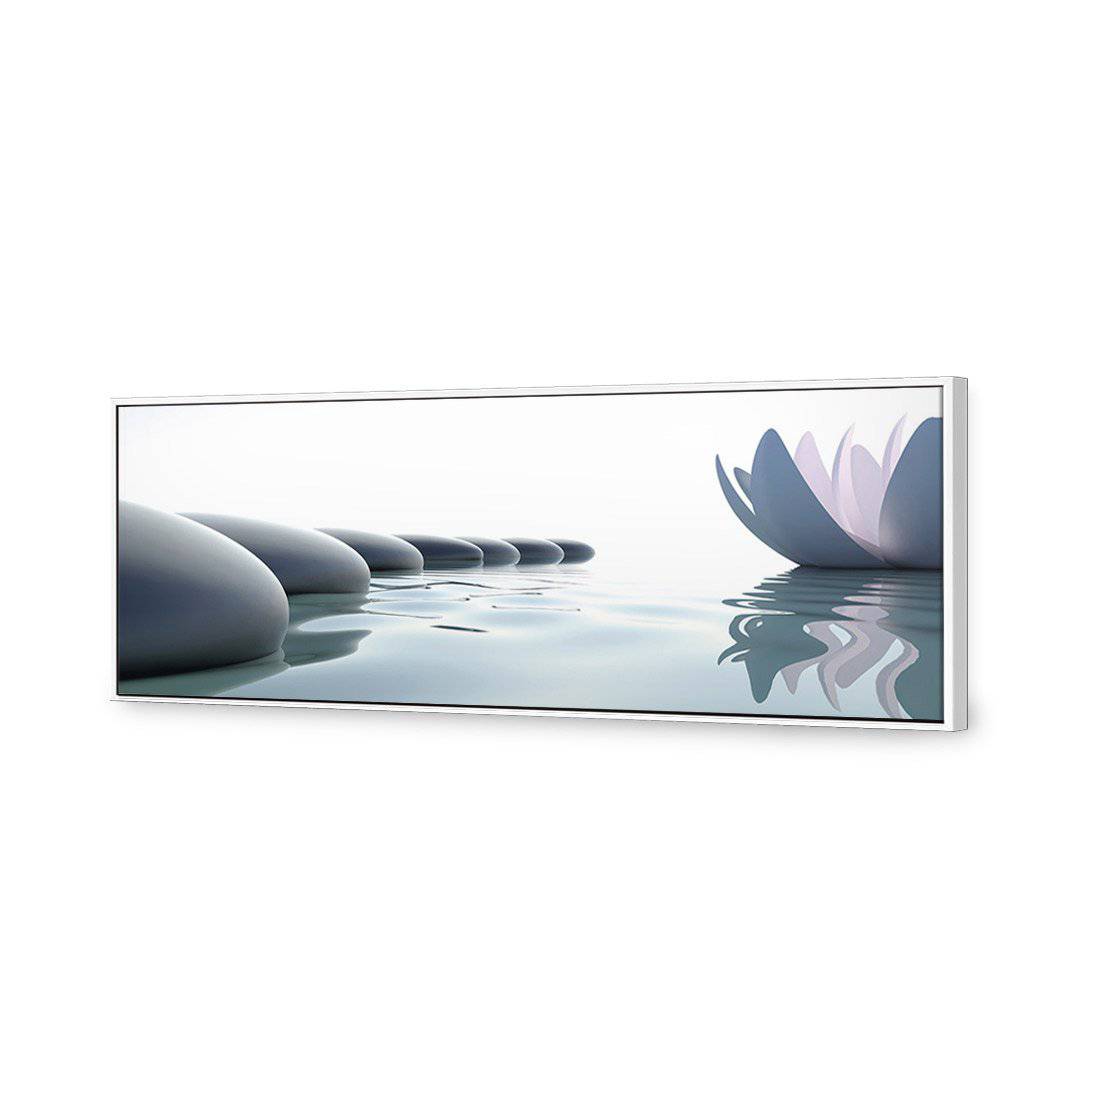 Zen Flower Lotus Canvas Art-Canvas-Wall Art Designs-60x20cm-Canvas - White Frame-Wall Art Designs